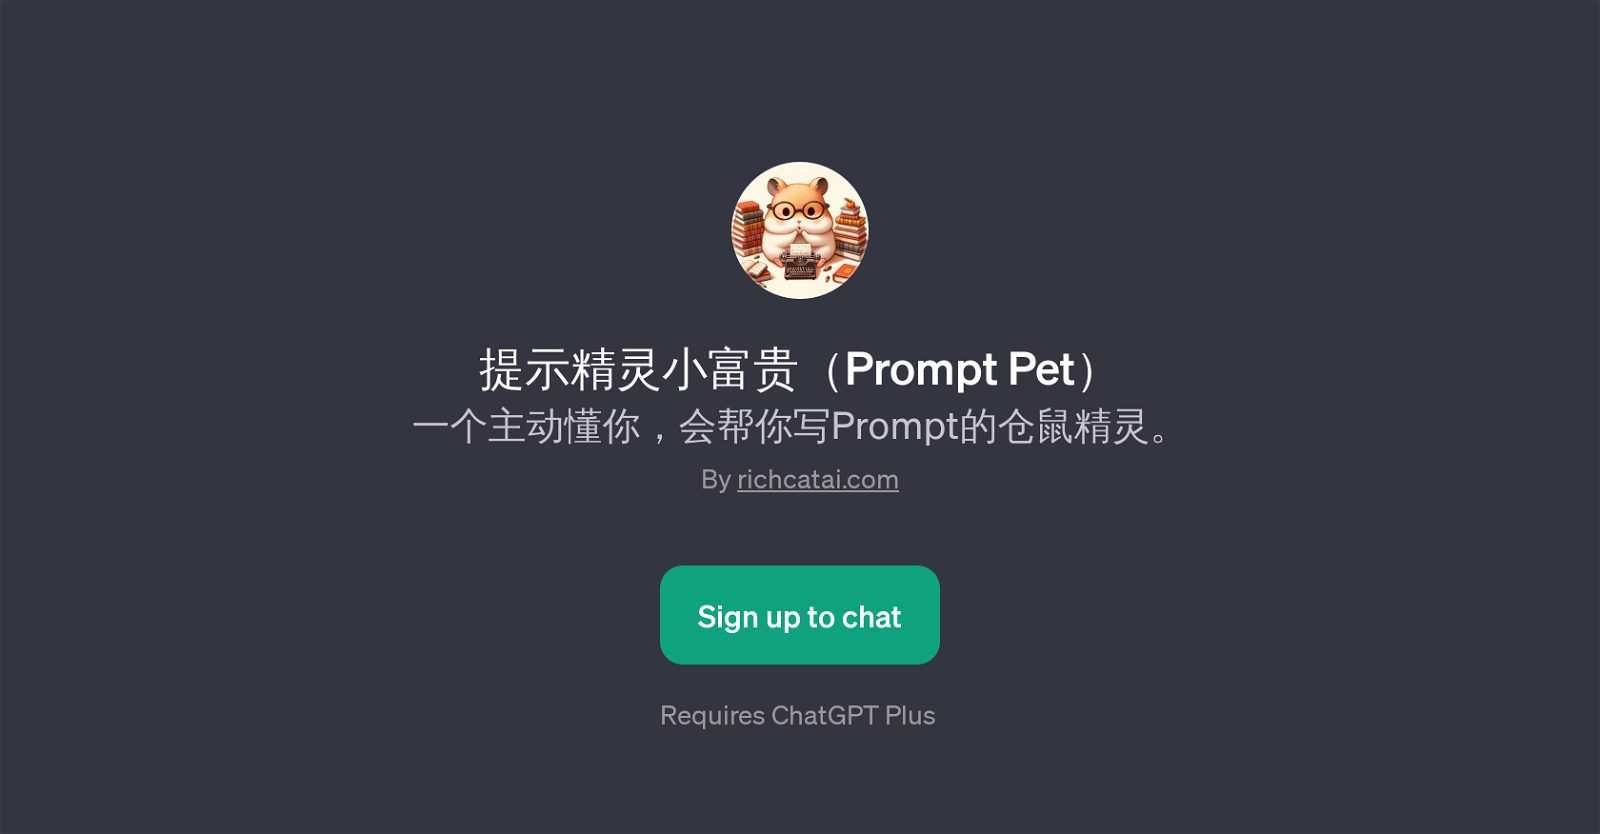 Prompt Pet website